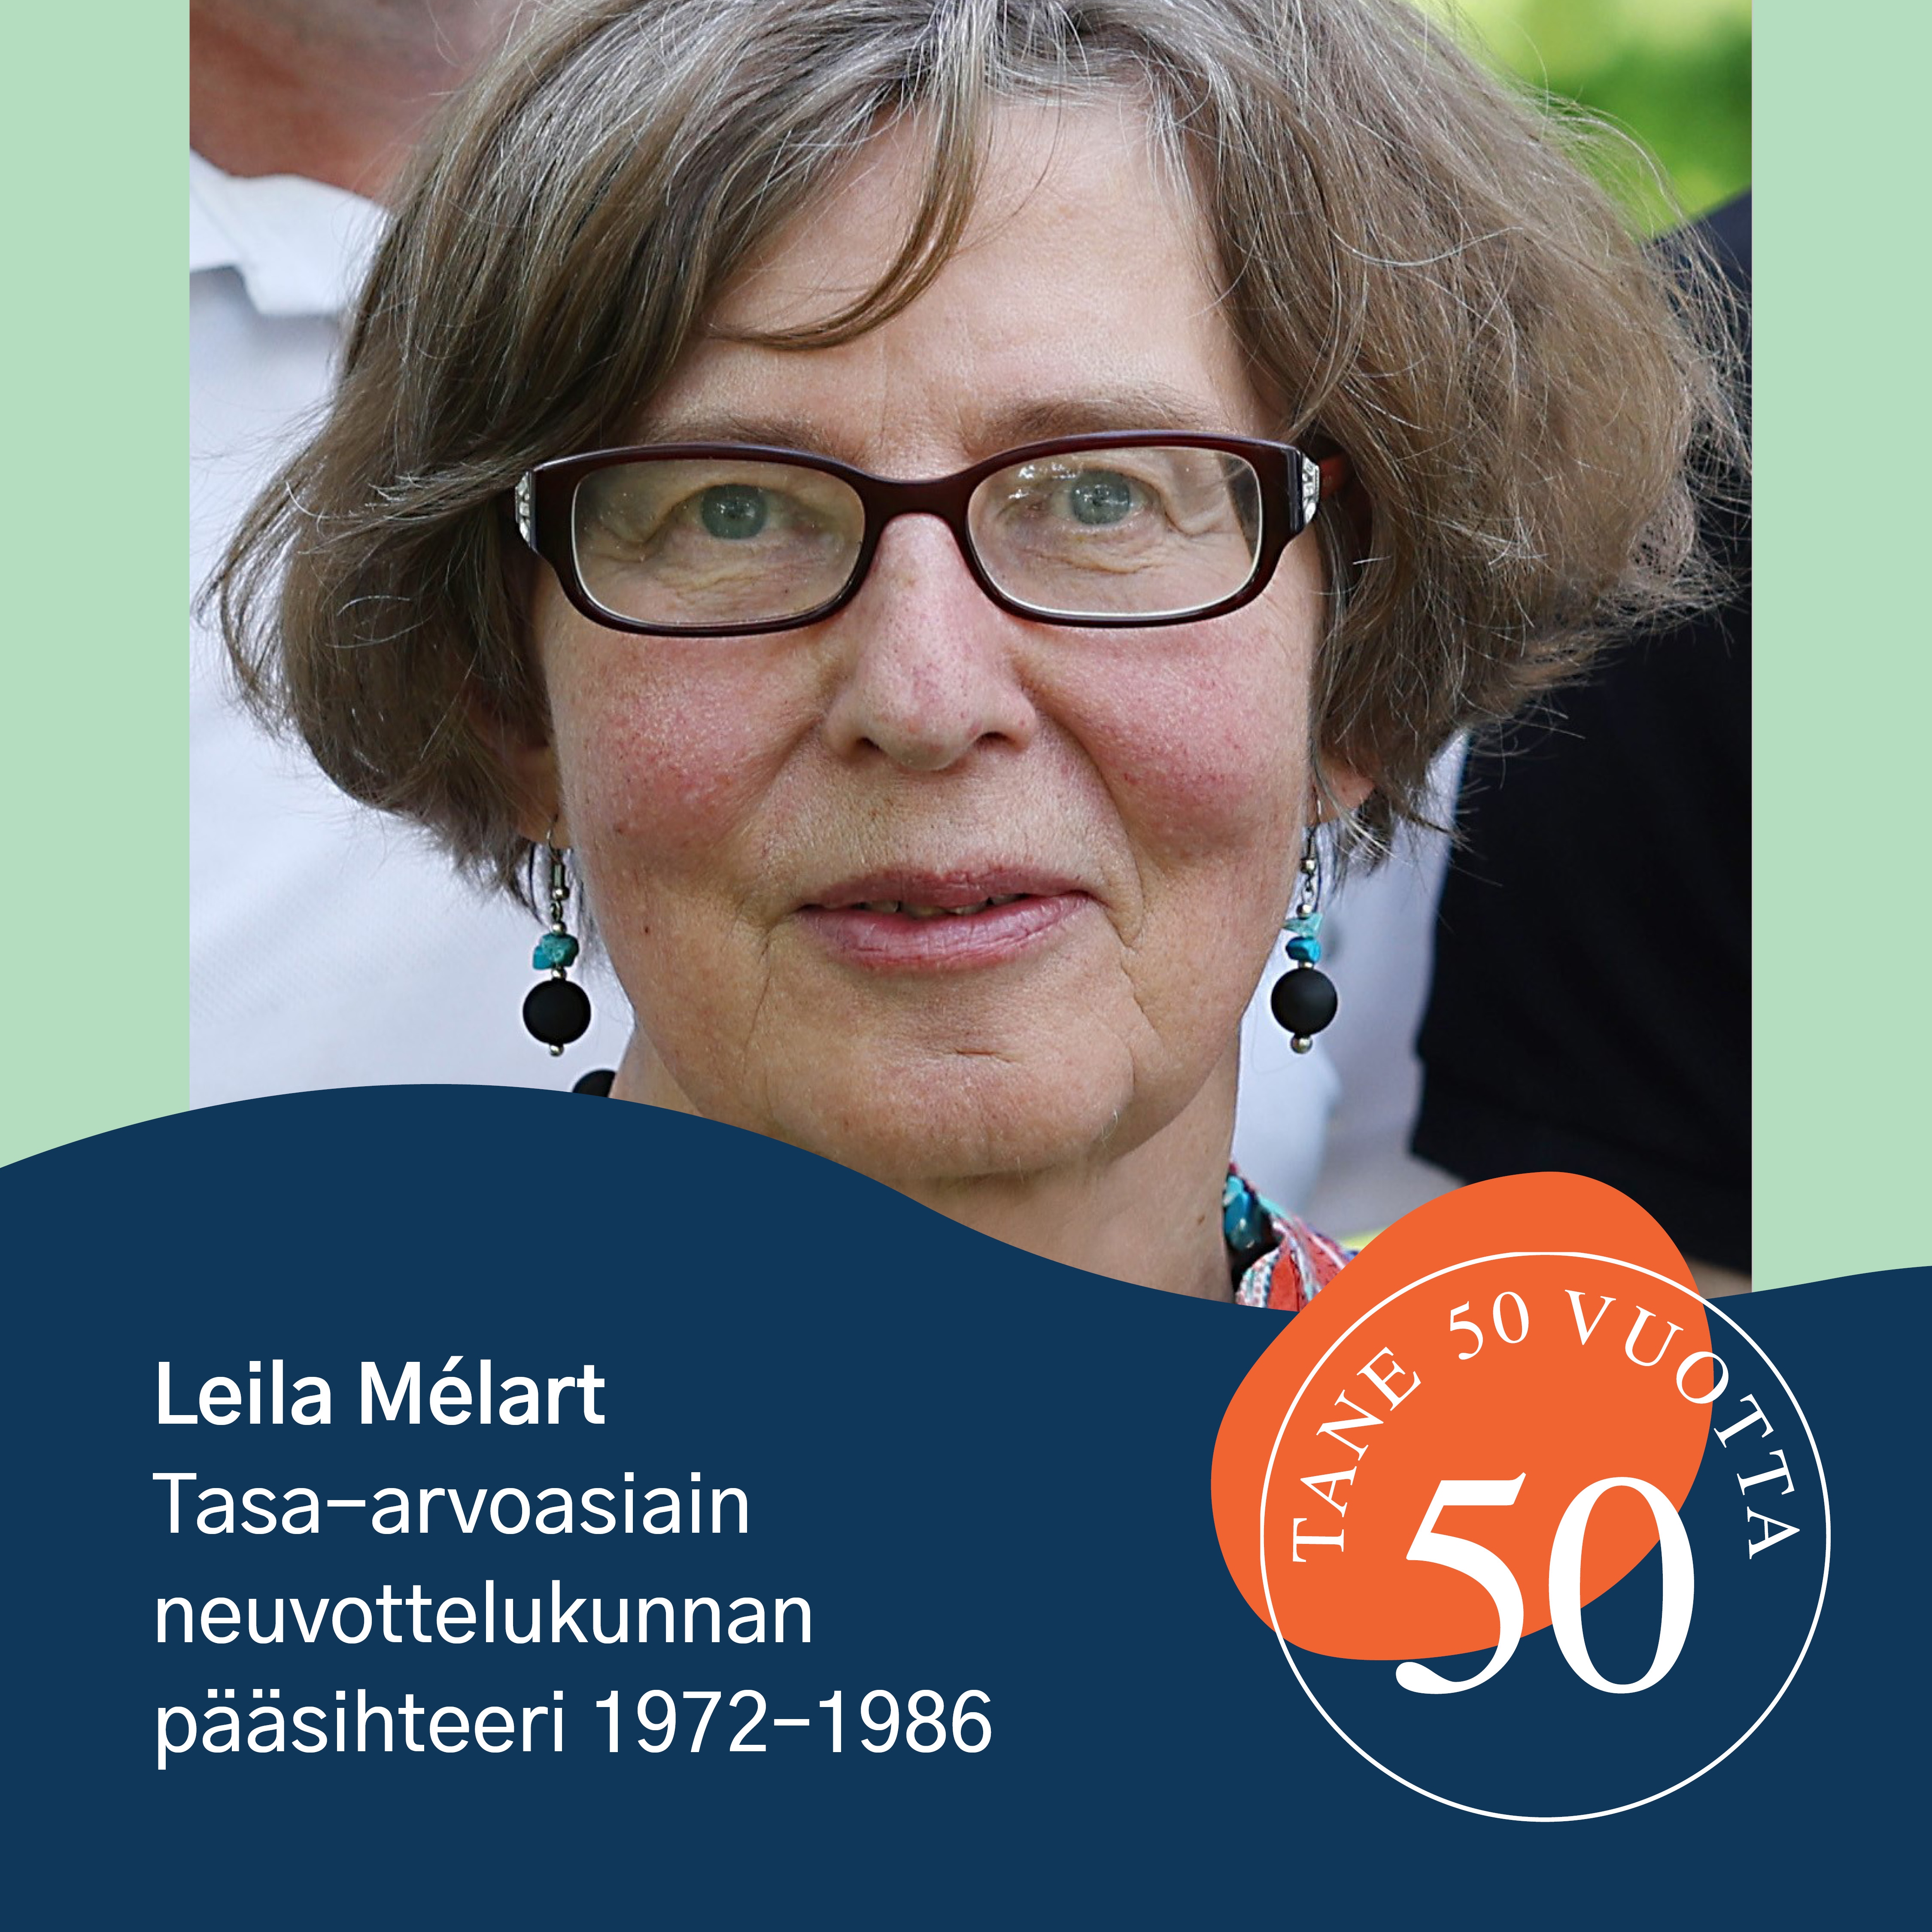 Leila Mélart toimi tasa-arvoasiain neuvottelukunnan pääsihteerinä vuosina 1972-1986. Kuvassa Mélart sekä Tane 50 vuotta logo.